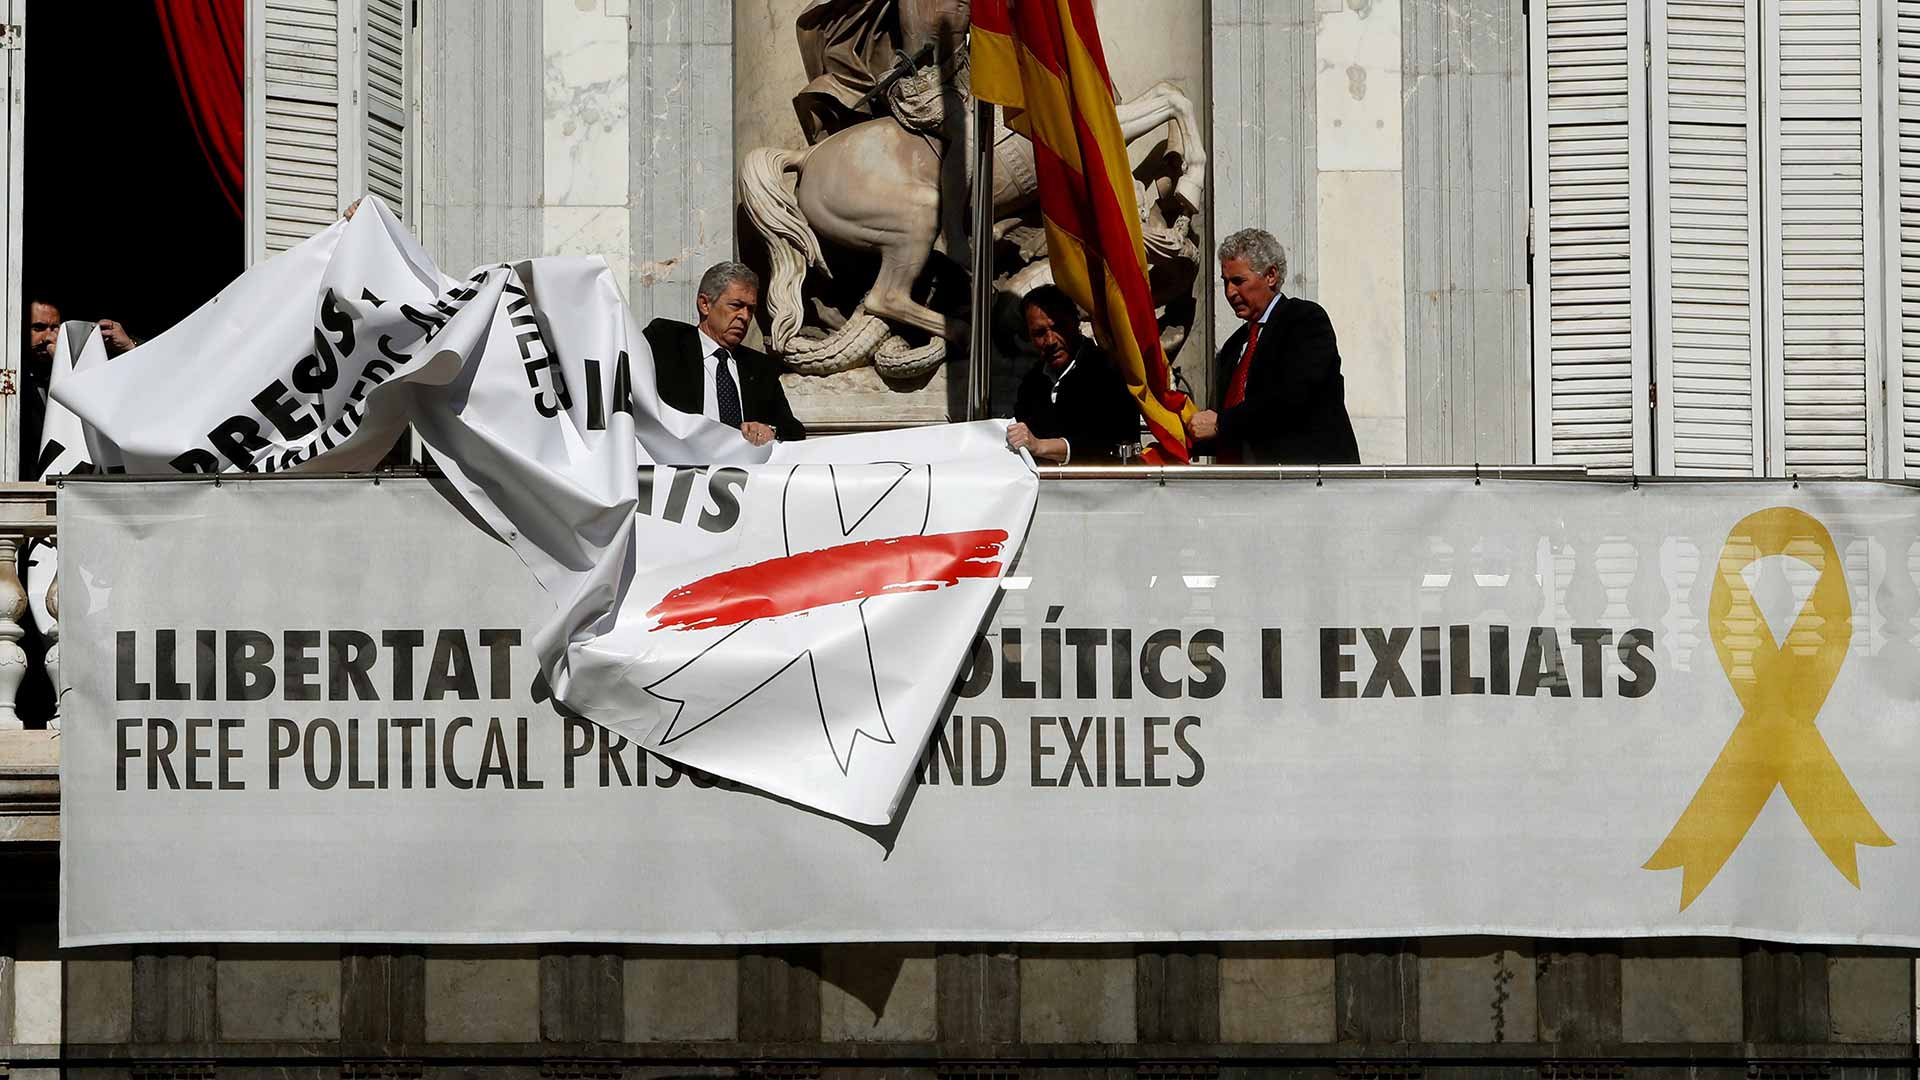 La Junta Electoral ordena al Gobierno catalán retirar "de manera inmediata" los símbolos "partidistas"